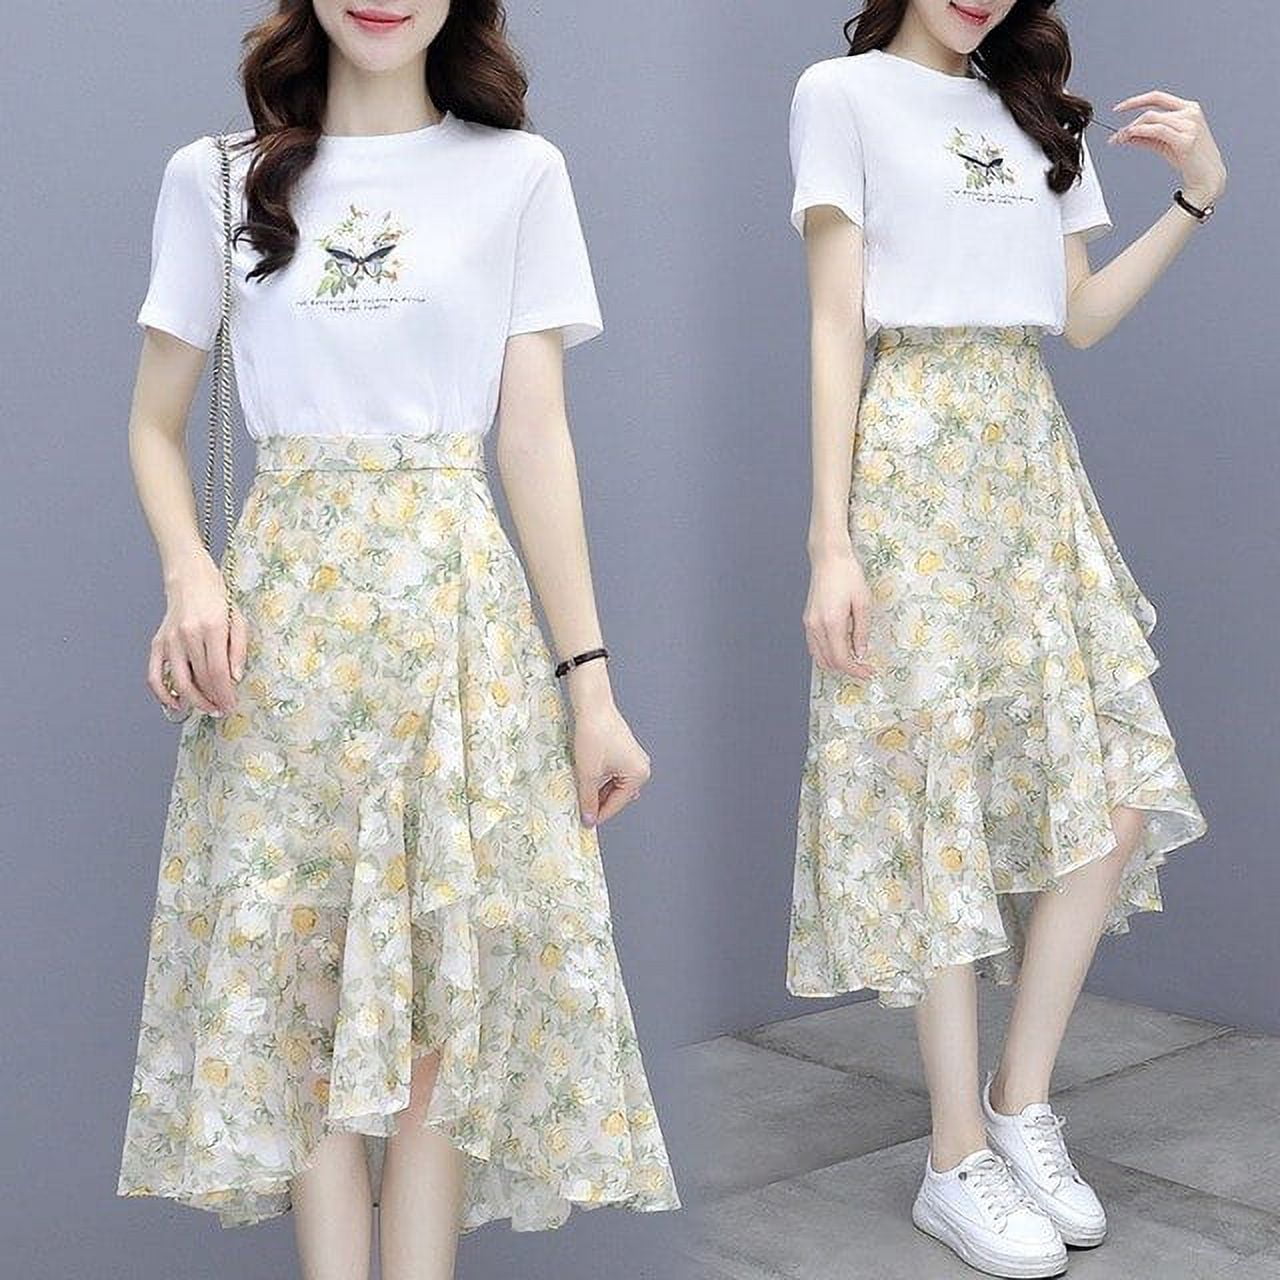 Share 190+ t shirt skirt dress